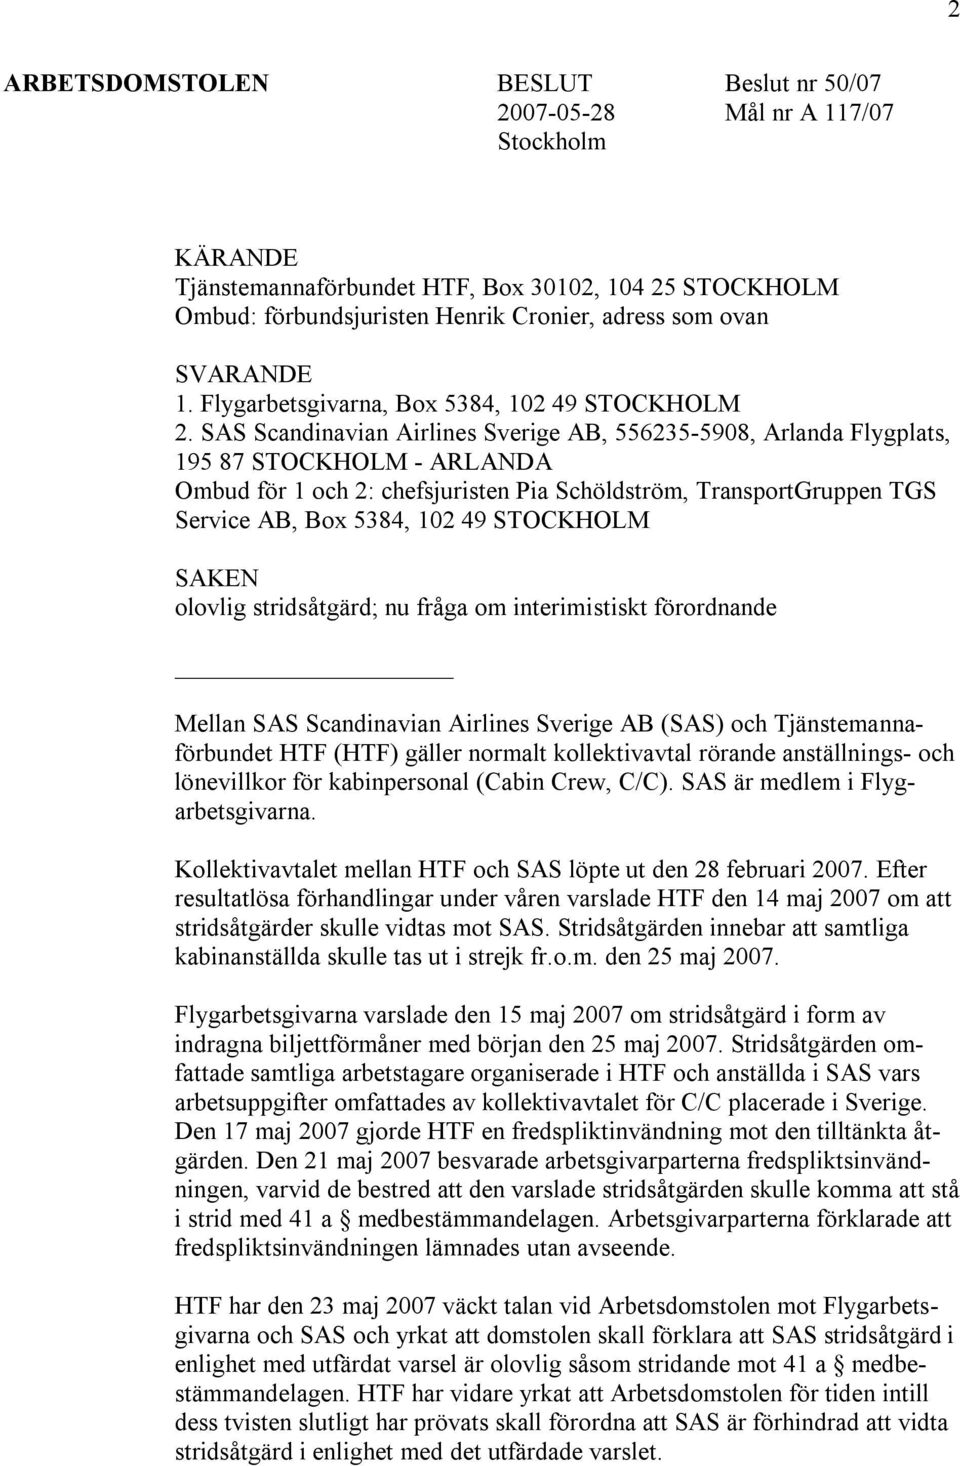 SAS Scandinavian Airlines Sverige AB, 556235-5908, Arlanda Flygplats, 195 87 STOCKHOLM - ARLANDA Ombud för 1 och 2: chefsjuristen Pia Schöldström, TransportGruppen TGS Service AB, Box 5384, 102 49